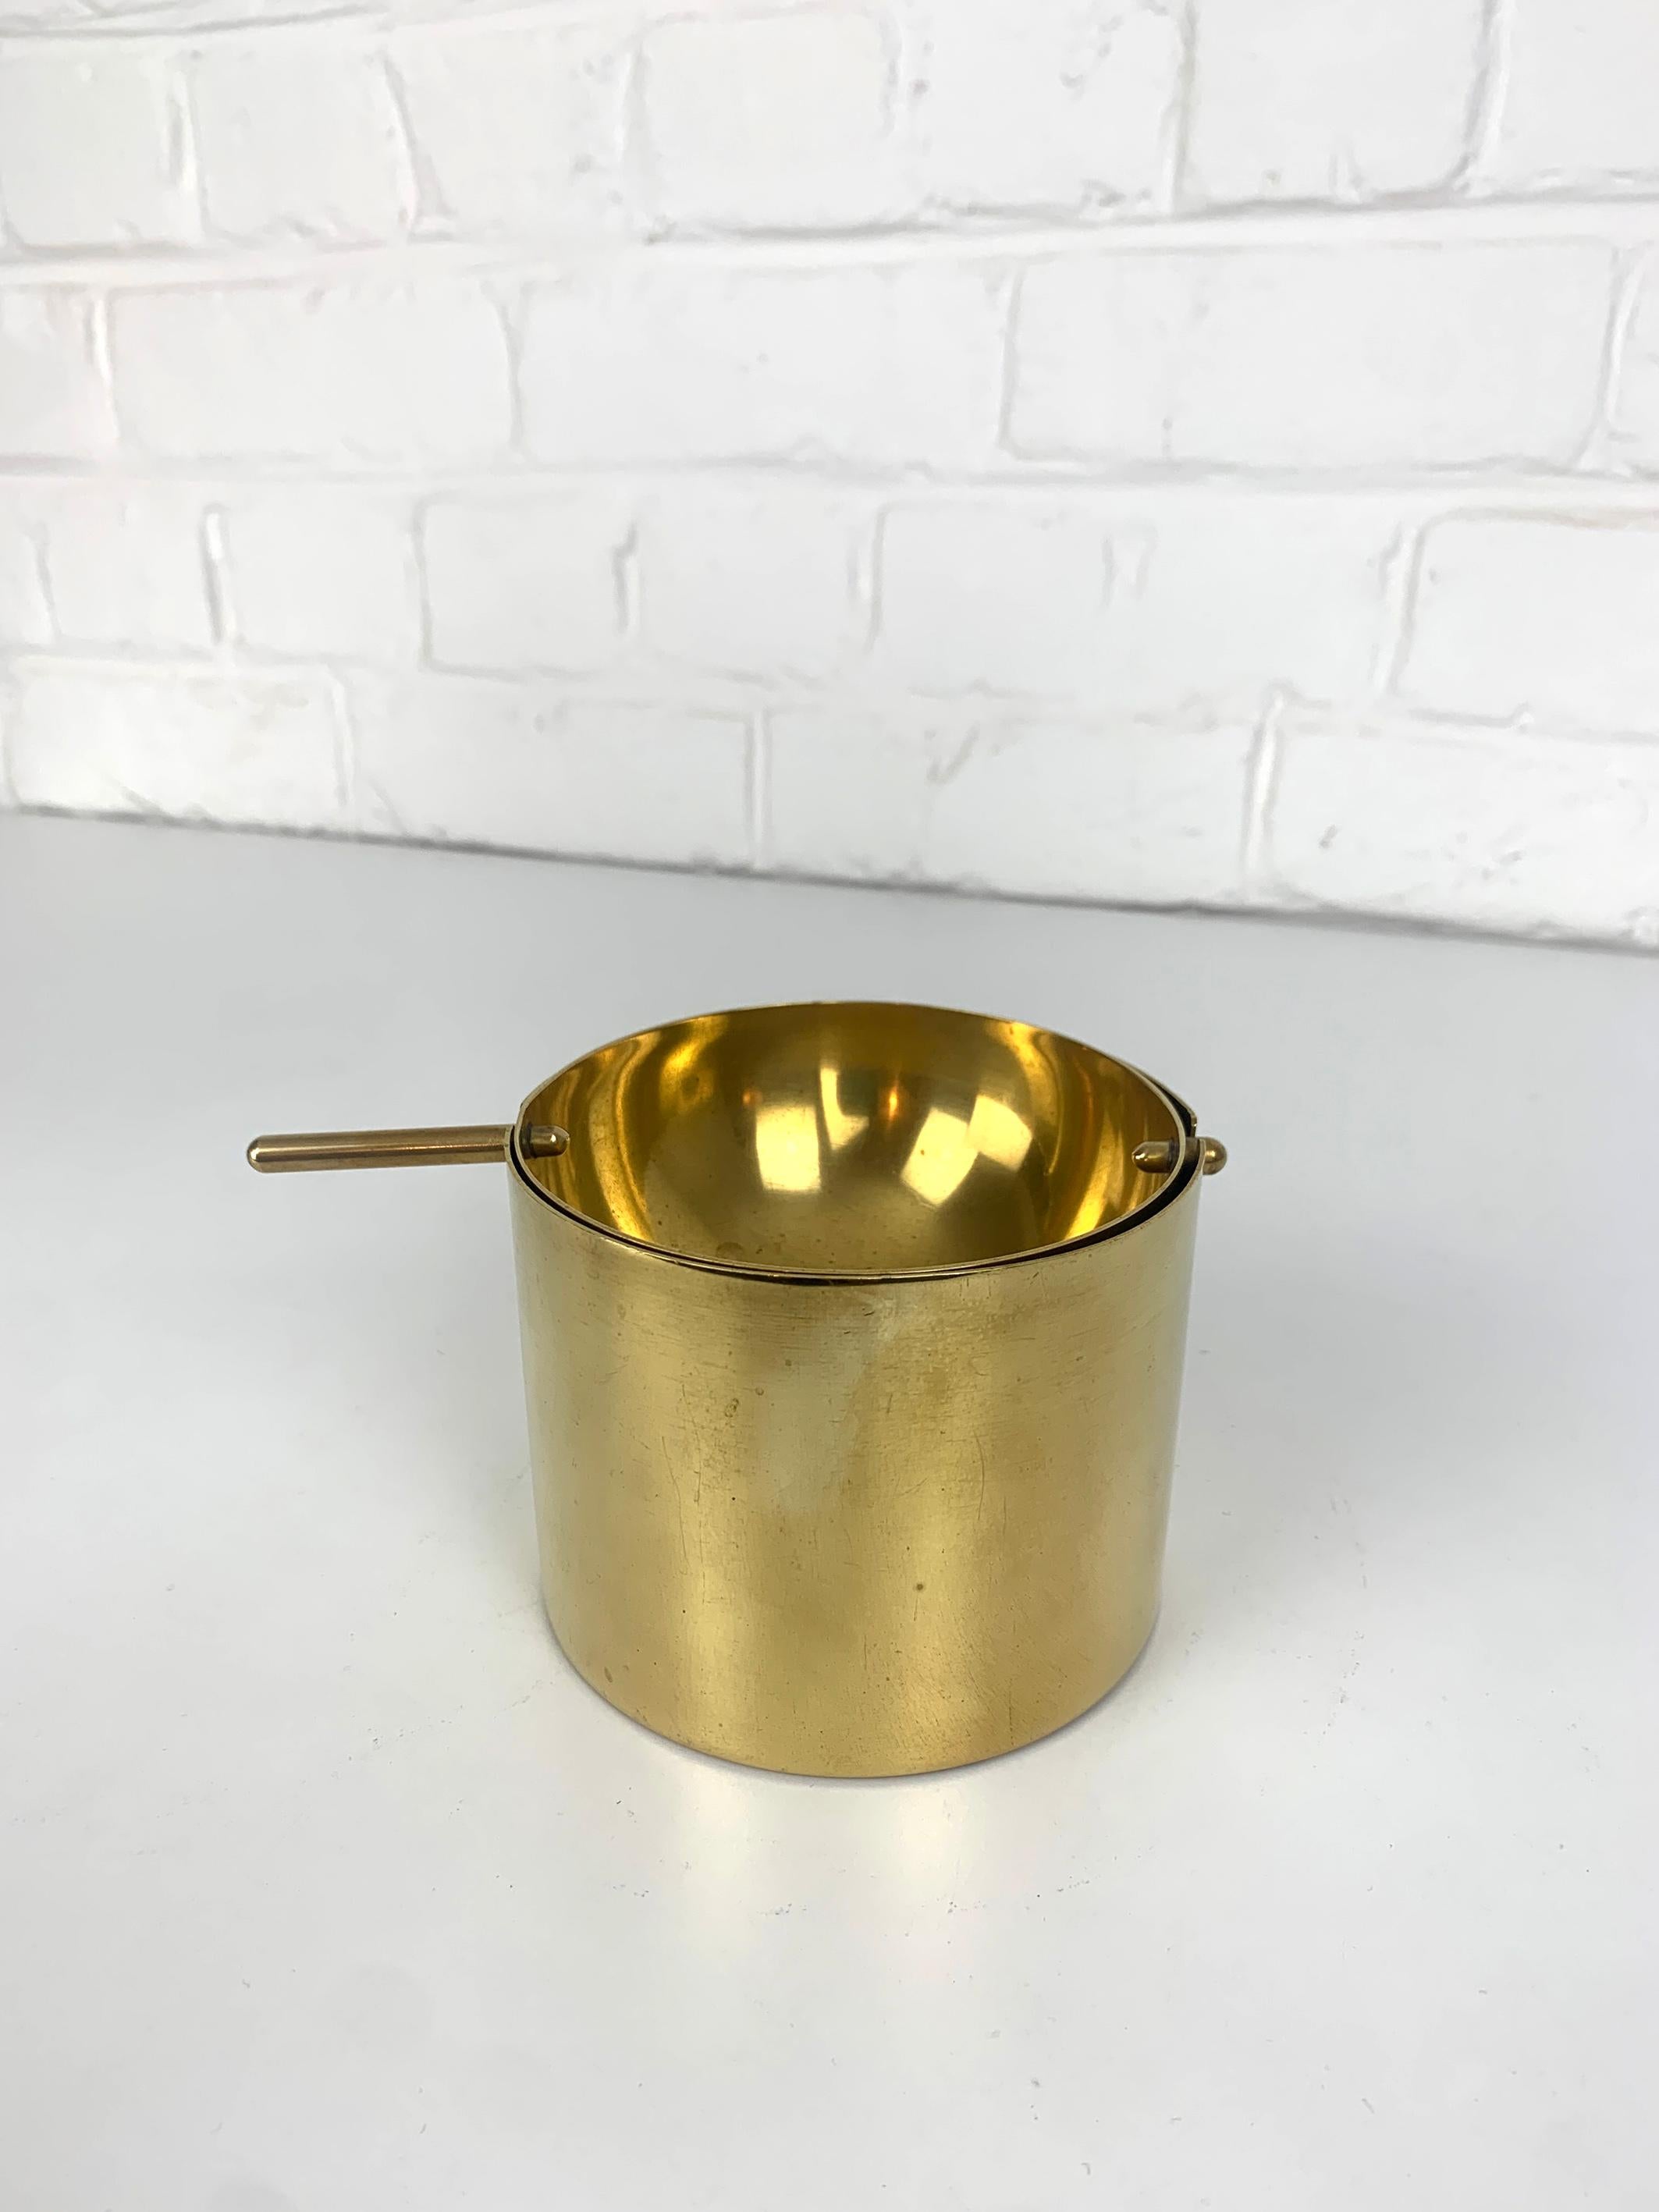 Grand cendrier Cylinda-line en laiton. Création iconique du designer danois Arne Jacobsen pour Stelton Brassware. 

La version large, ou cendrier à cigare, est la plus rare des deux tailles existantes. Diamètre : 10 cm.

La ligne d'articles en